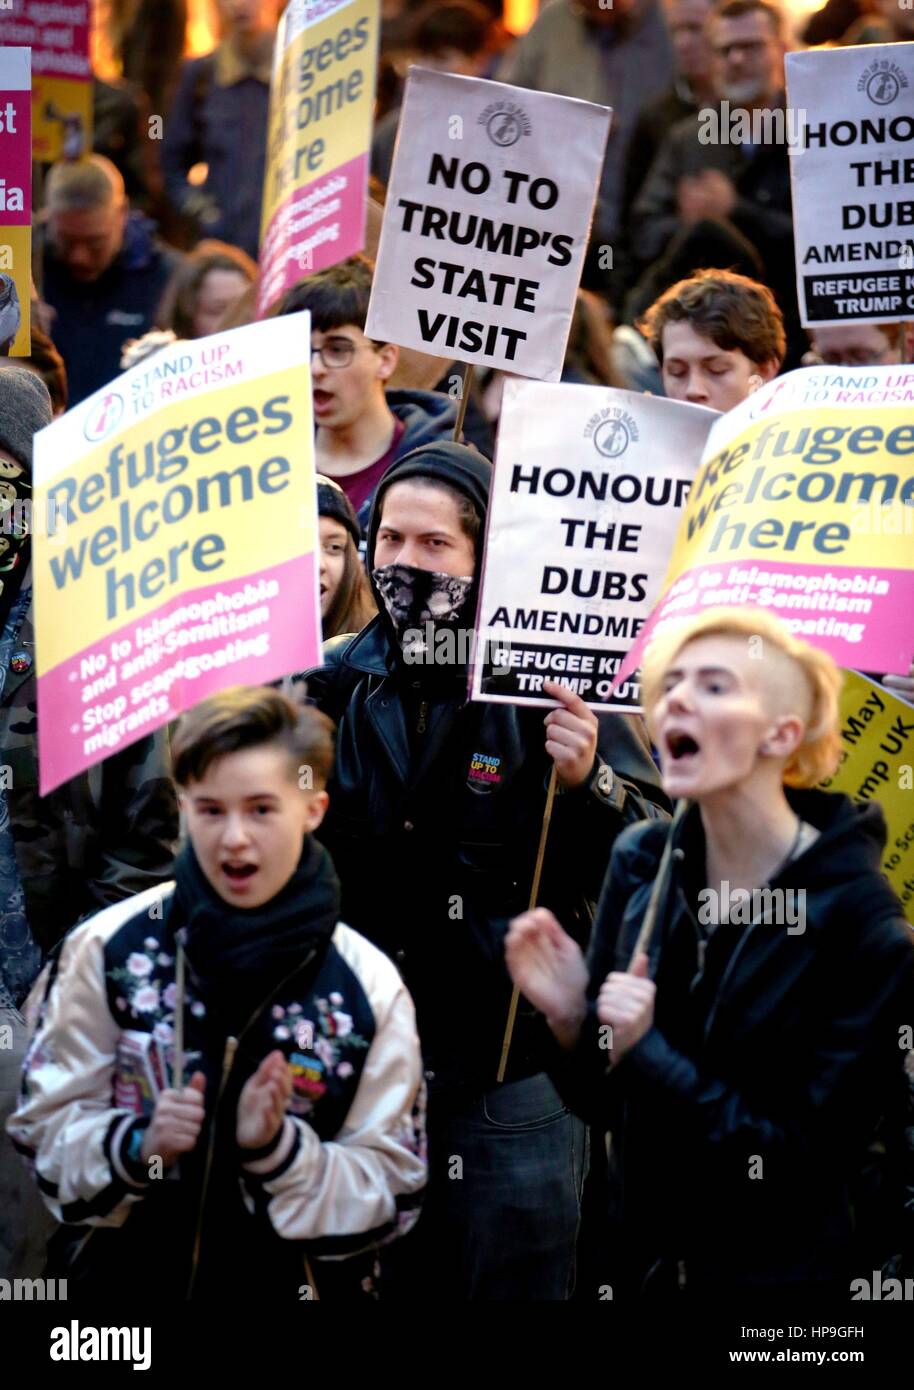 Un rally a Glasgow per protestare contro Donald Trump nel giorno della visita di Stato del presidente degli Stati Uniti è oggetto di discussione nel Parlamento britannico. Foto Stock